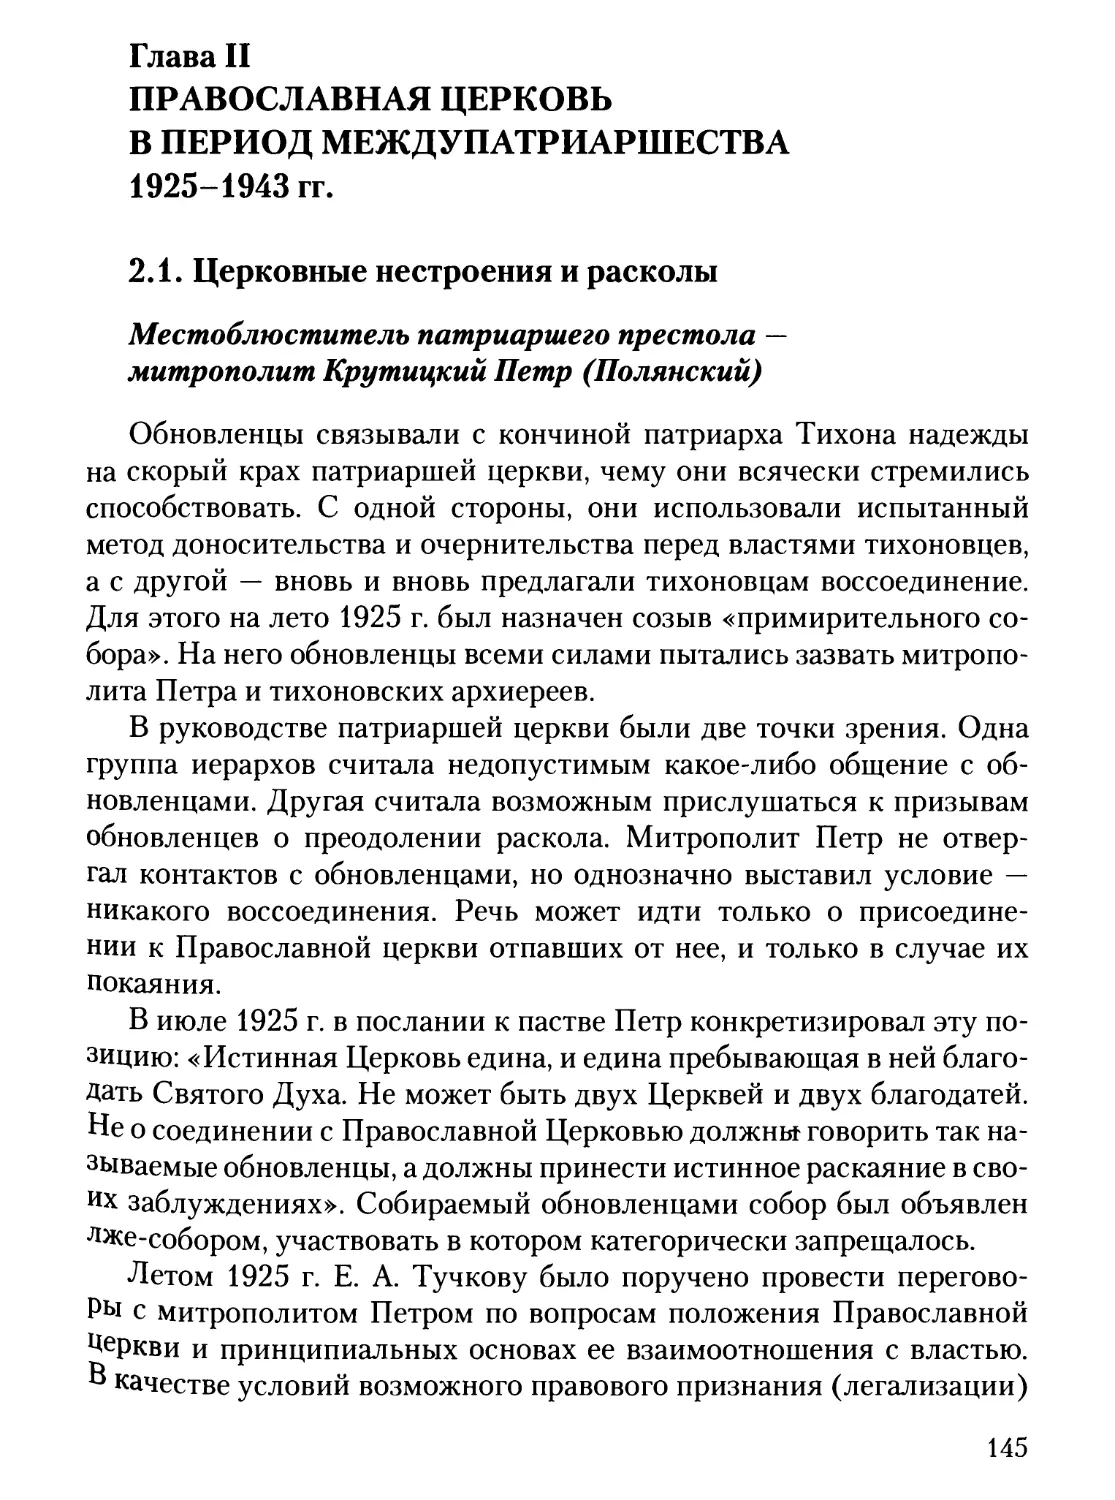 Глава II. Православная церковь в период междупатриаршества 1925-1943 гг.